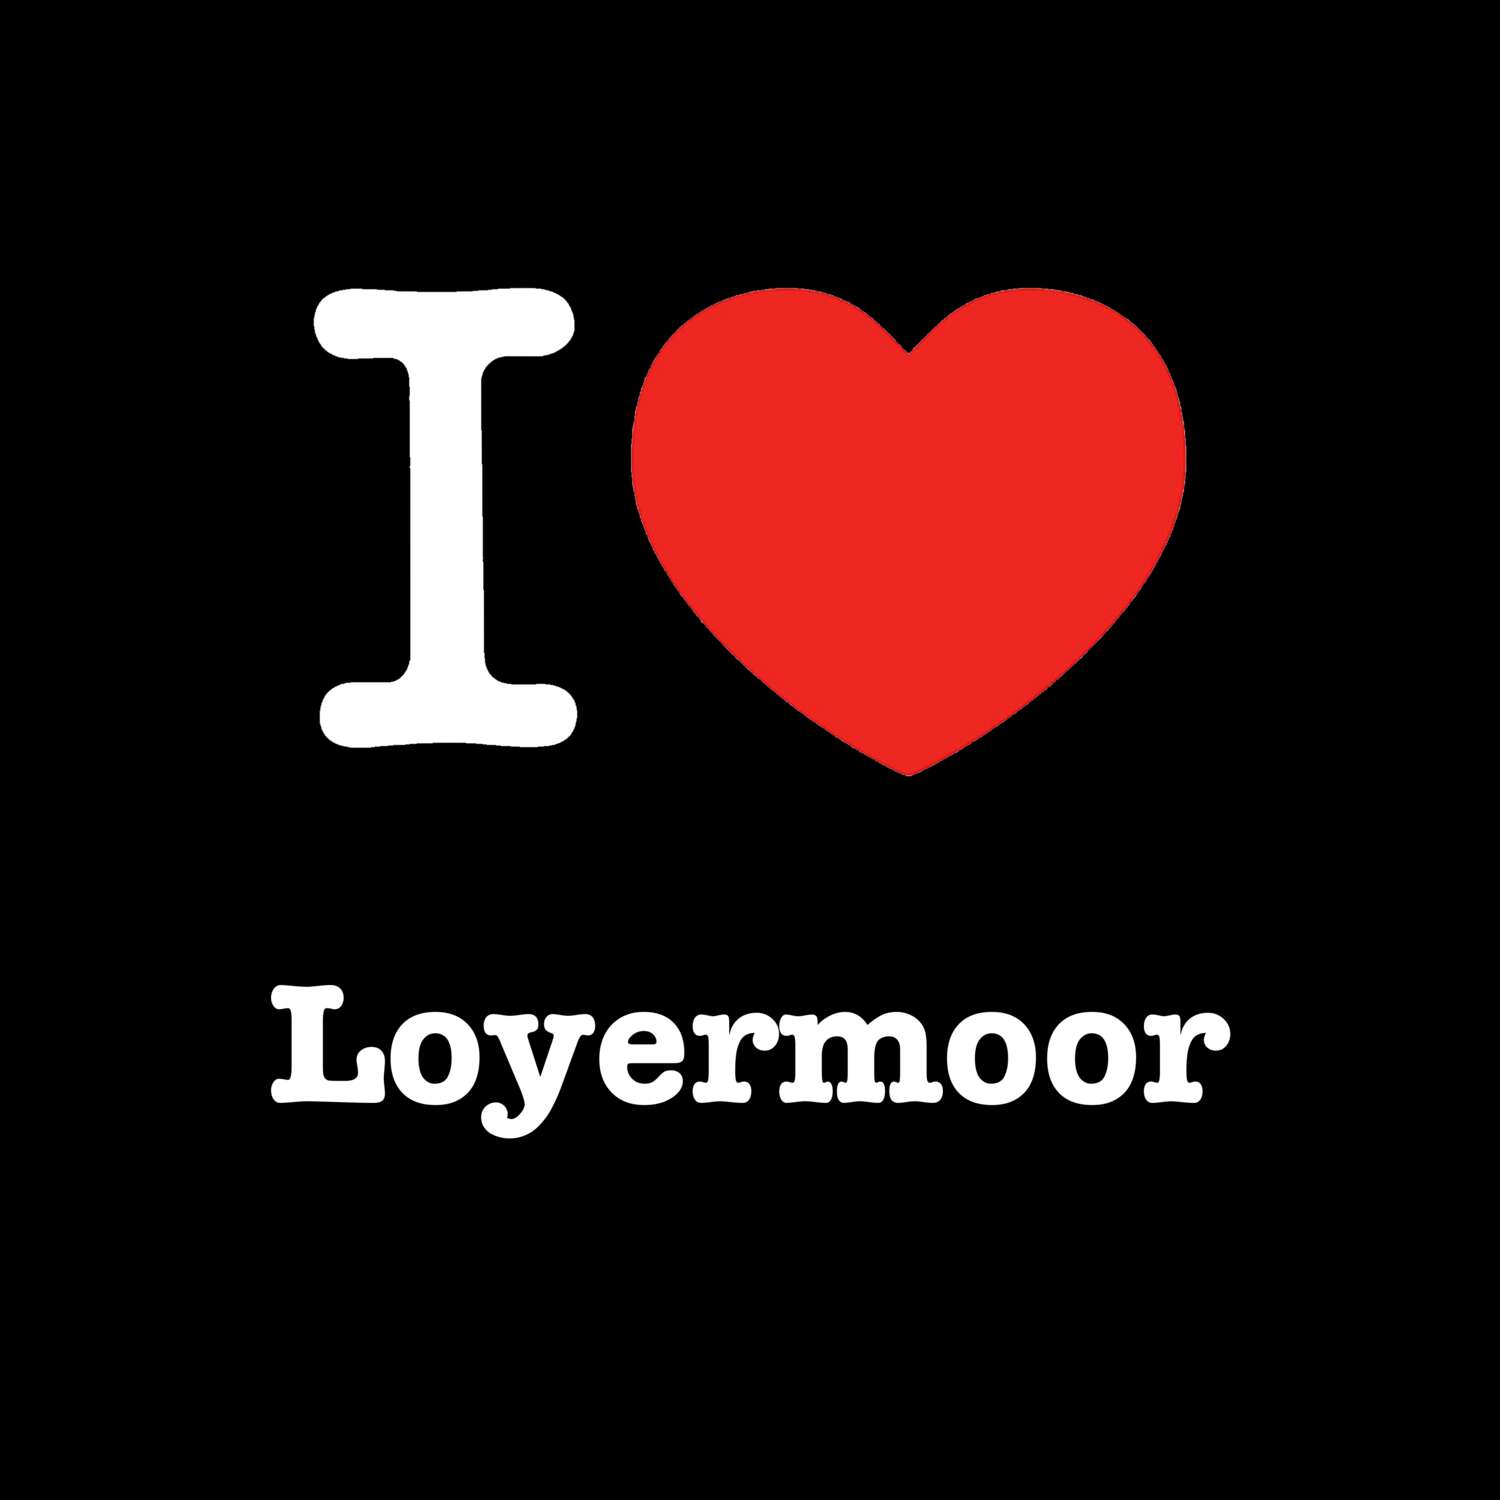 Loyermoor T-Shirt »I love«